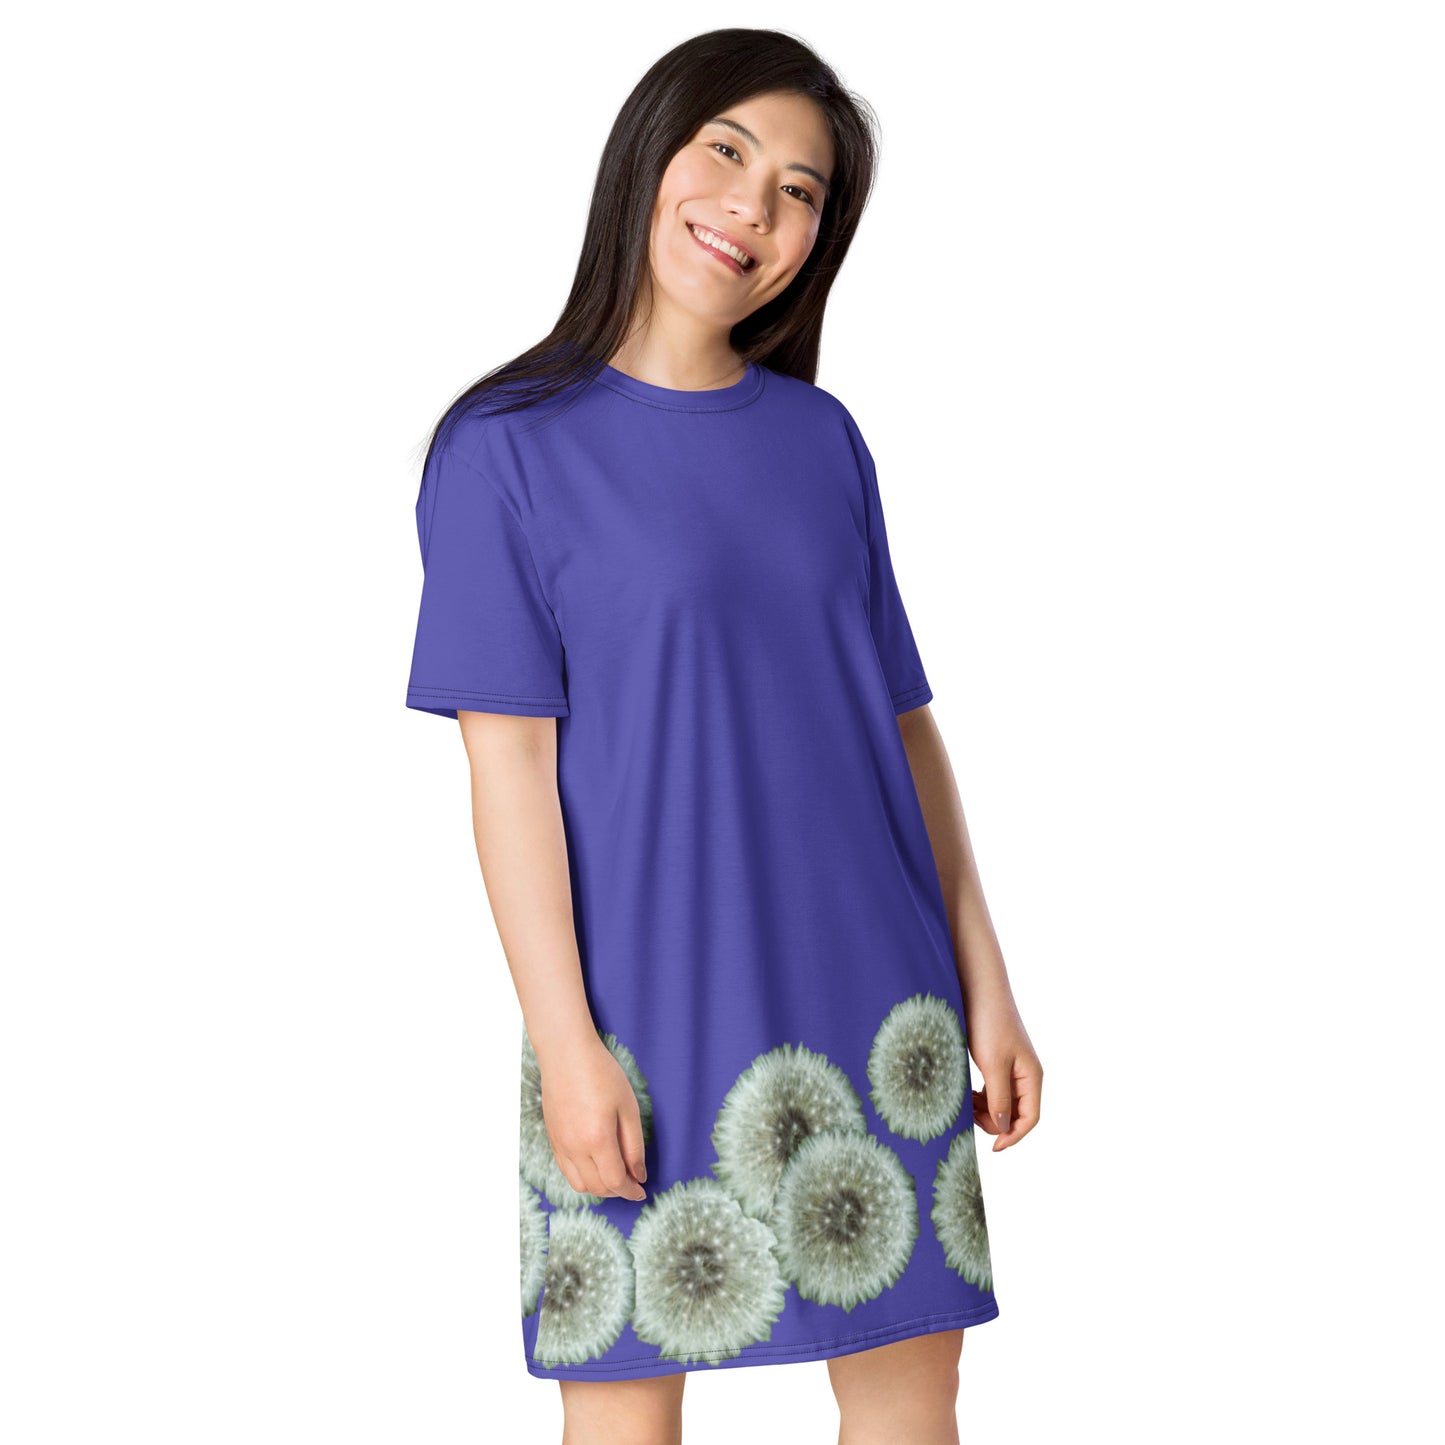 T-shirt dress Dandelions on purple